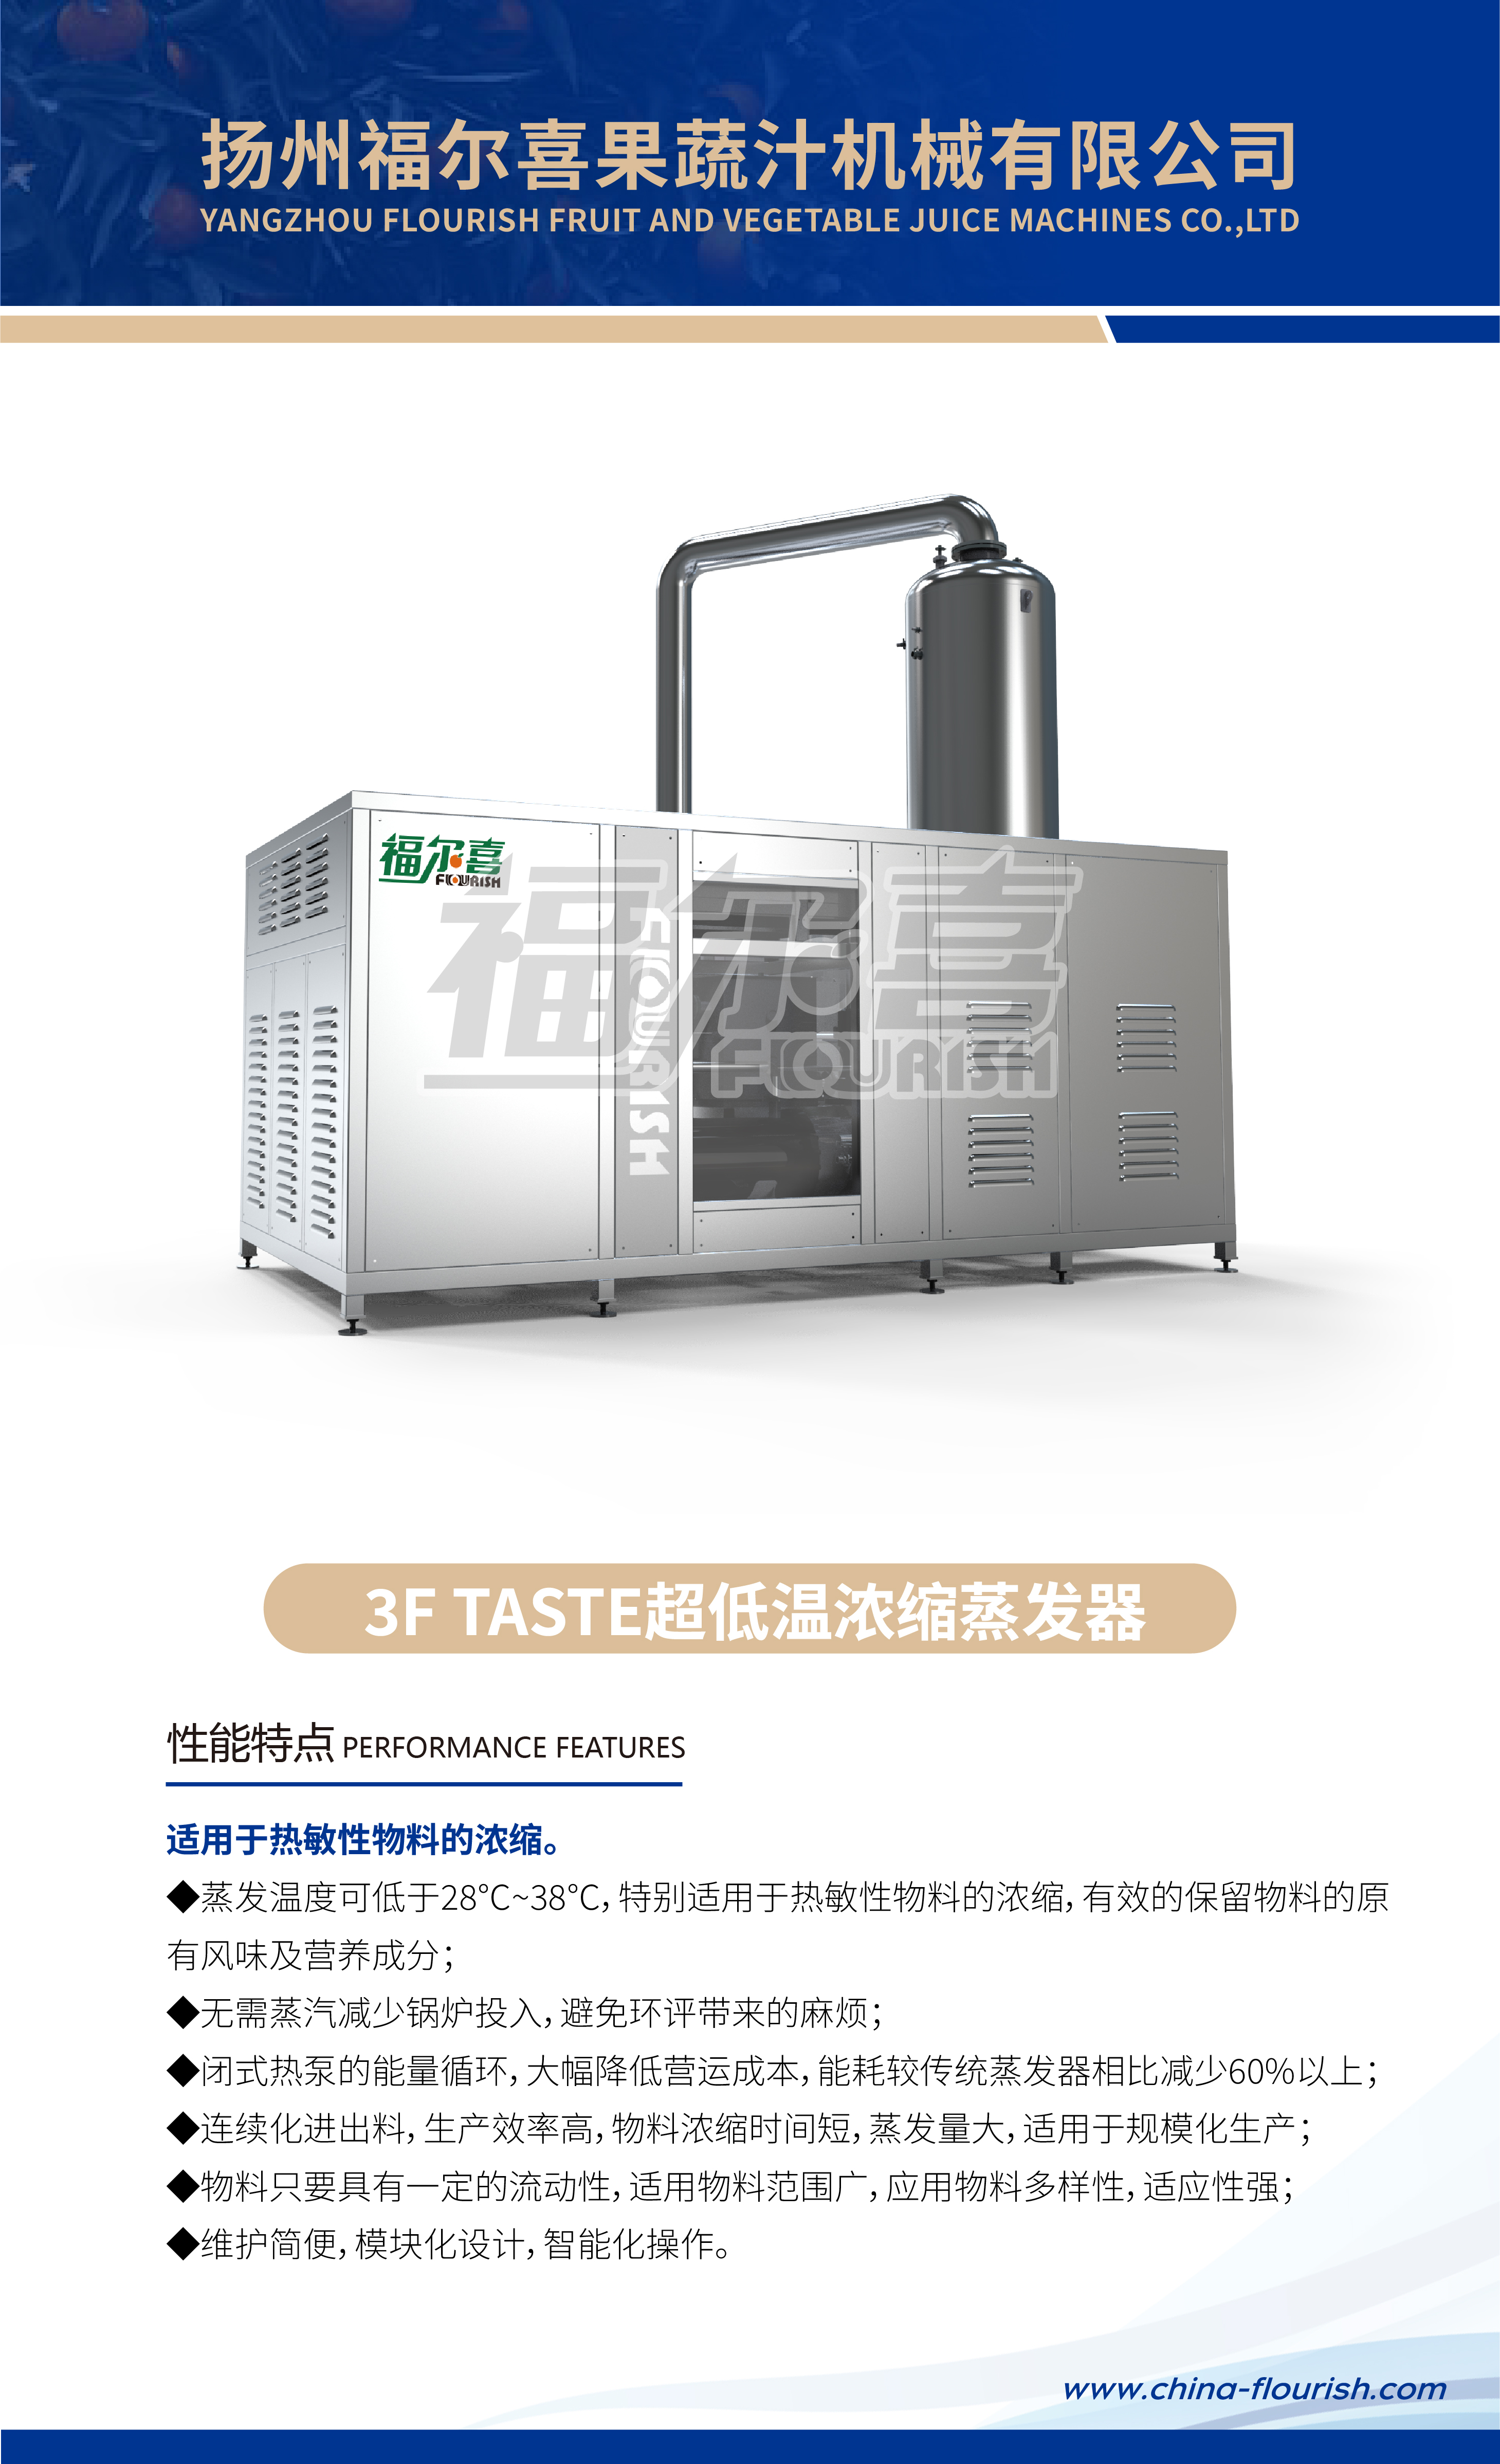 3F TASTE超低温浓缩蒸发器